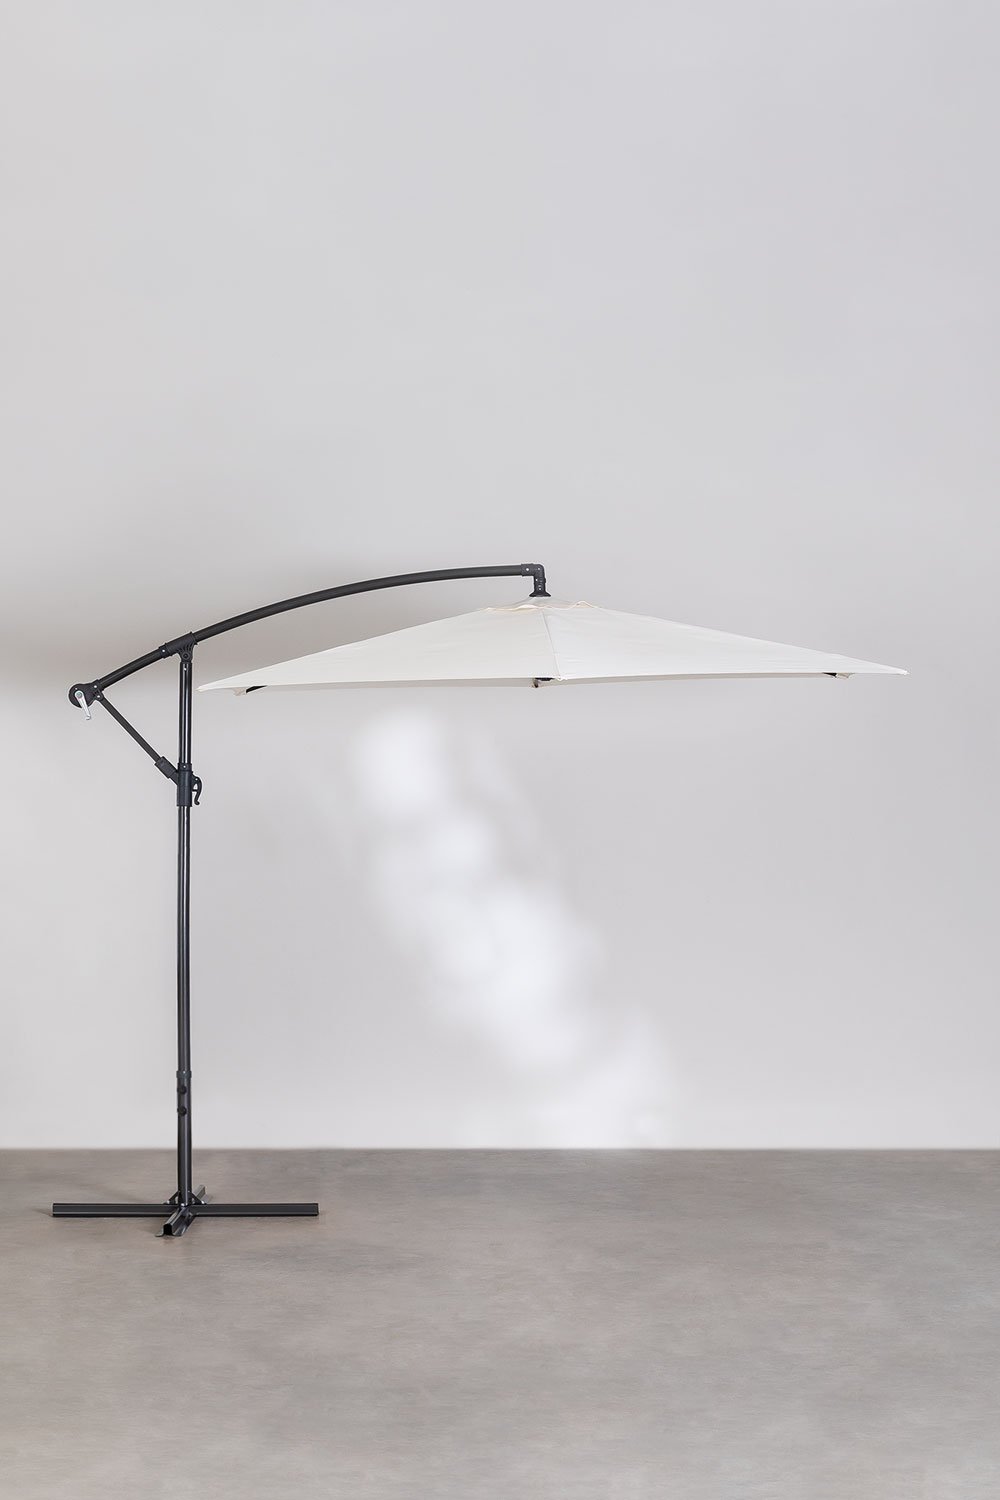 Paraplu van stof en staal (Ø295 cm) Gerran, galerij beeld 1